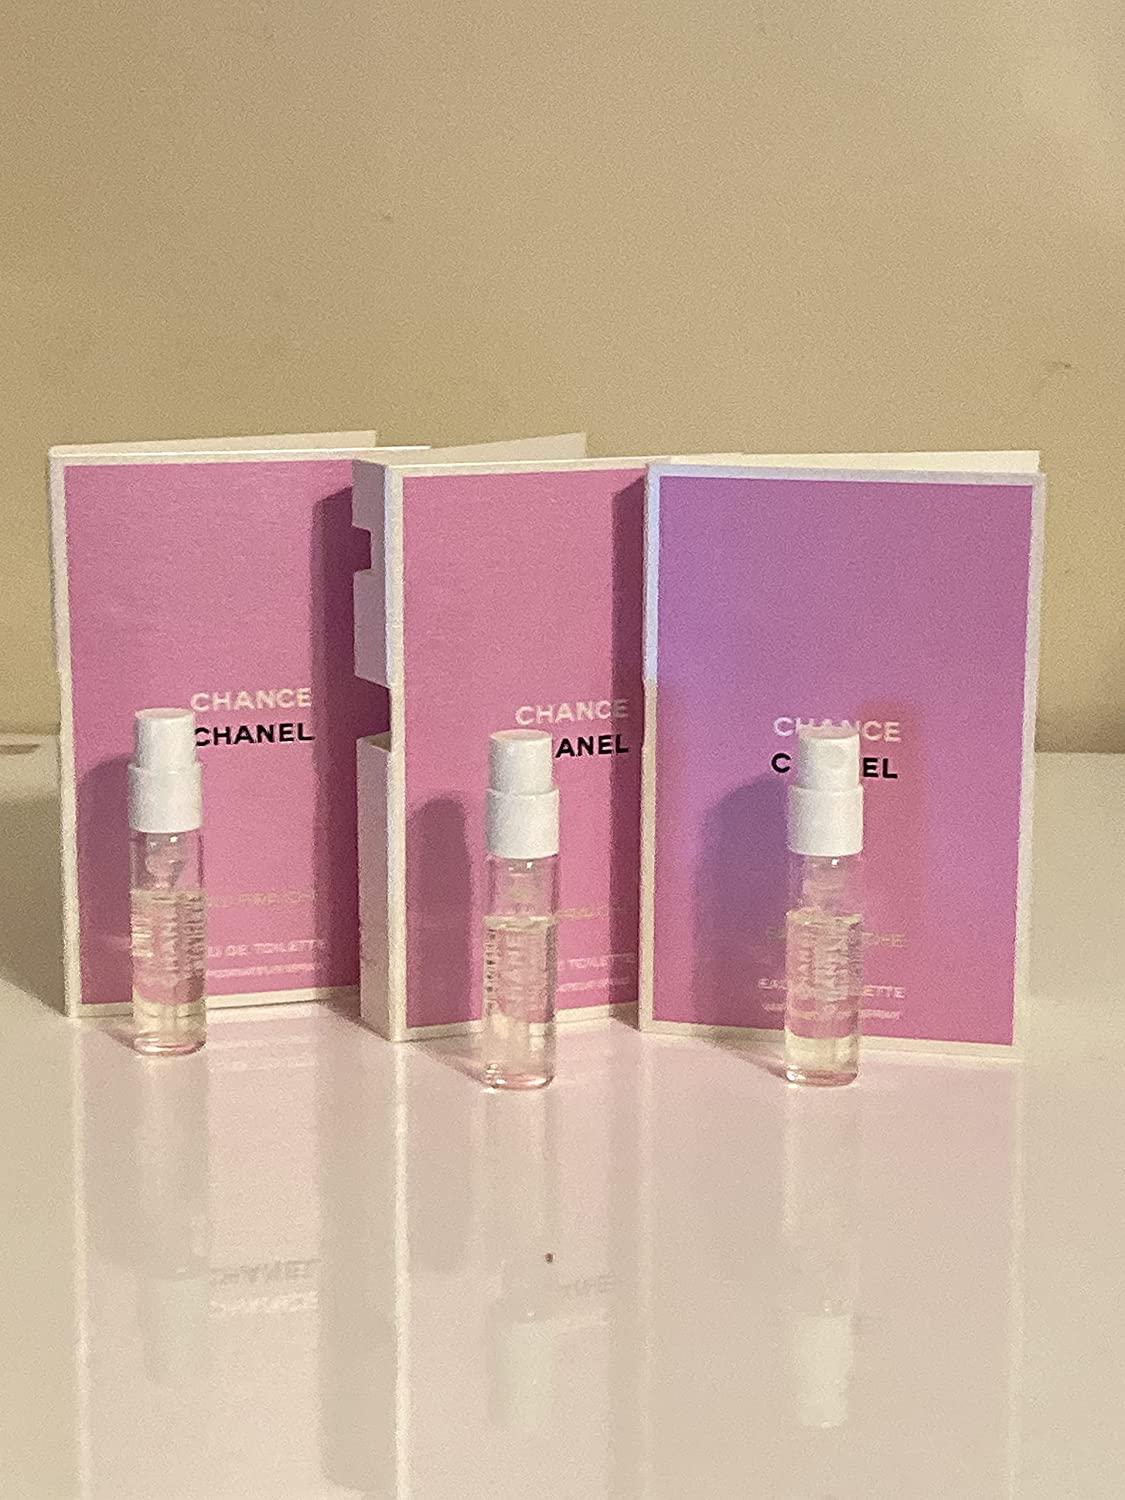  Chanel Chance Eau Fraiche for Women Eau De Toilette Spray, 5.0  Oz : Beauty & Personal Care